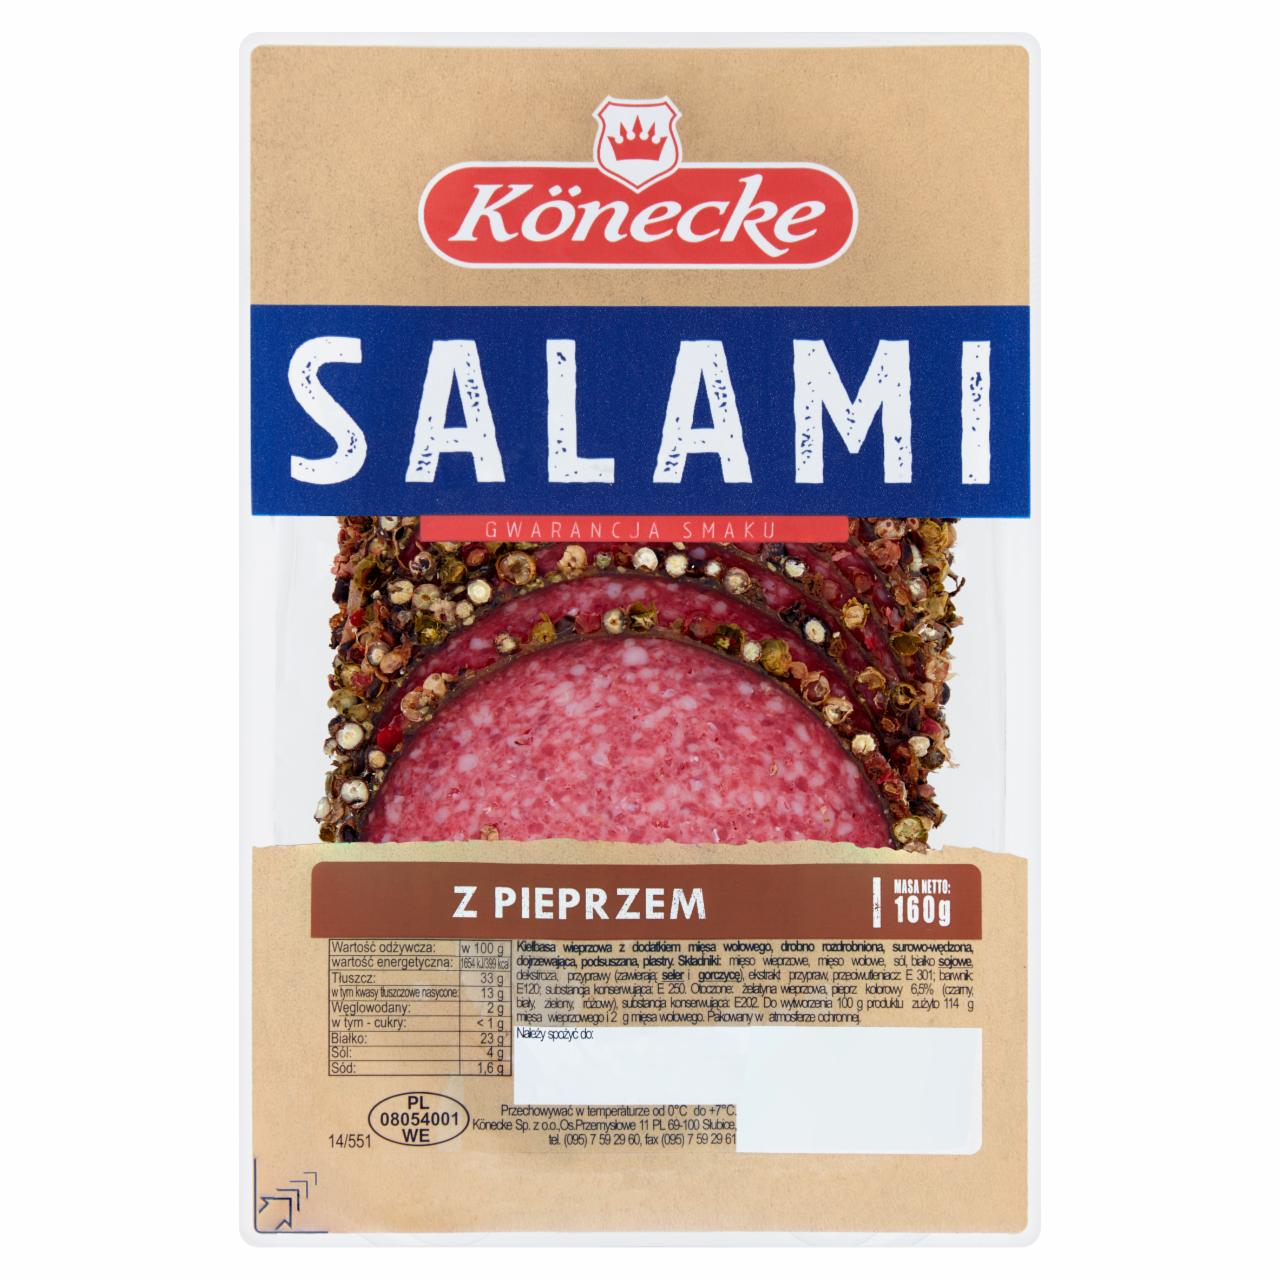 Zdjęcia - Salami z pieprzem 160 g Könecke